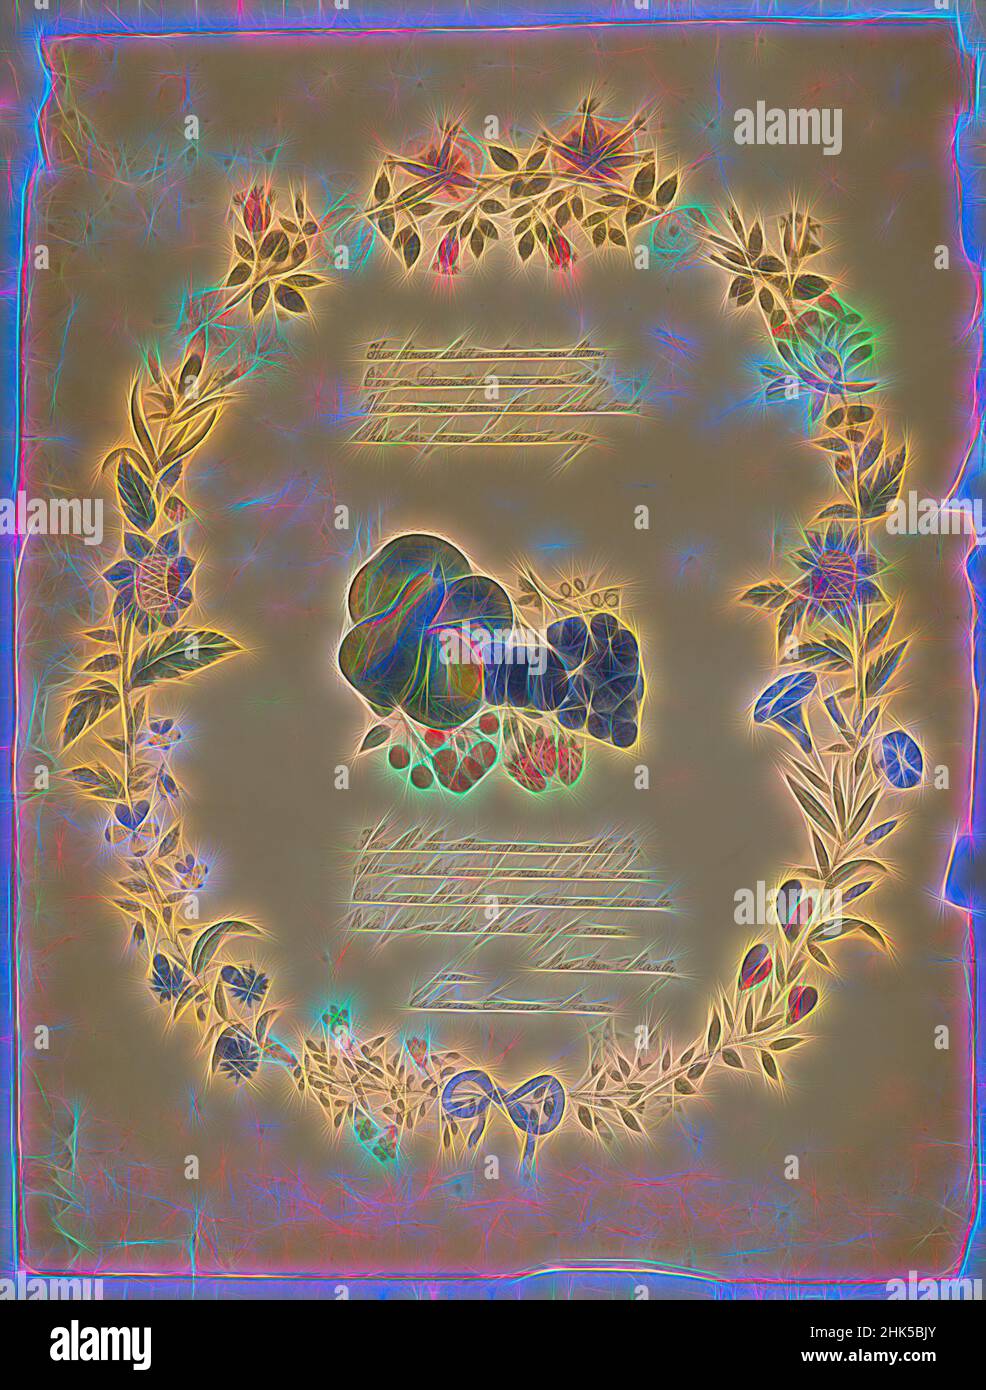 Inspirée par le poème et la couronne décorative, Catharine Emma Manley, Aquarelle sur graphite avec texte en encre sur papier, s.d., feuille : 21 5/16 x 16 1/4 po, 54,1 x 41,3 cm, cursive, floral, fleurs, folksy, maison, deuil, poème, femme artiste, écriture, Repensé par Artotop. L'art classique réinventé avec une touche moderne. Conception de lumière chaleureuse et gaie, de luminosité et de rayonnement de lumière. La photographie s'inspire du surréalisme et du futurisme, embrassant l'énergie dynamique de la technologie moderne, du mouvement, de la vitesse et révolutionne la culture Banque D'Images